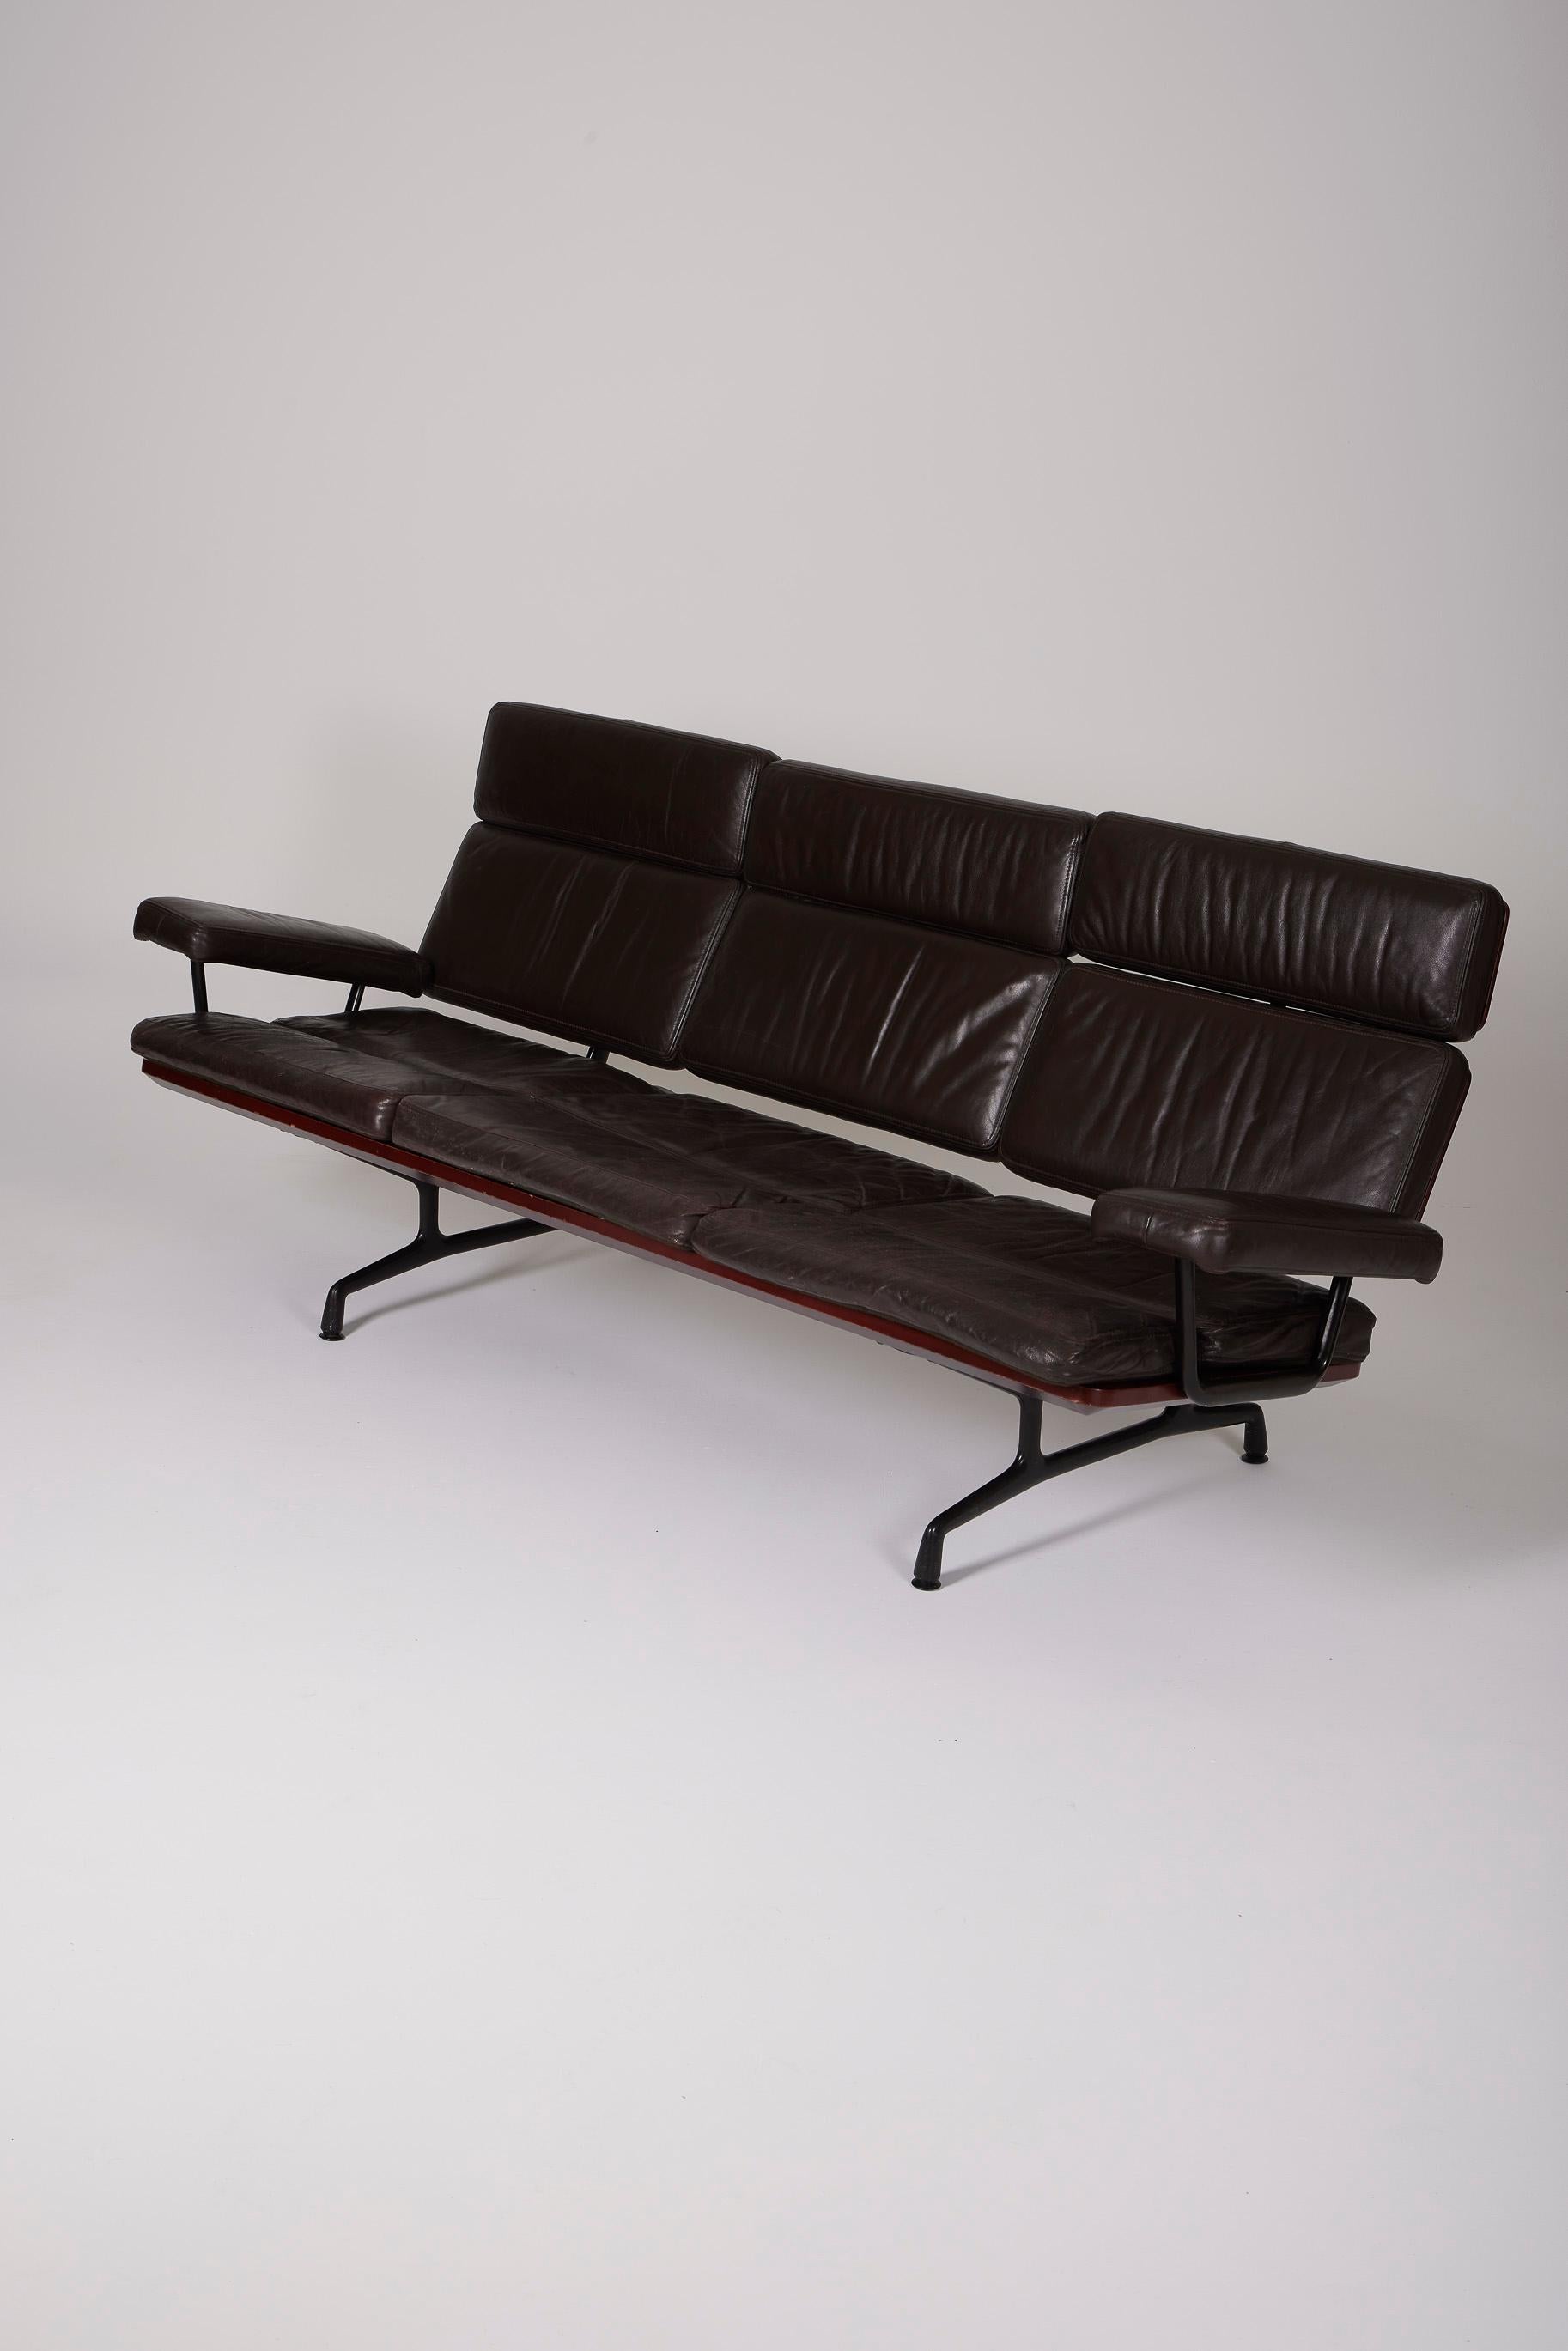 Canapé 3 places modèle ES108 des designers Ray et Charles Eames pour Herman Miller, années 1980. La base est en aluminium poli. L'assise et le dossier sont en cuir marron. Le cuir d'origine est patiné. Bon état.
DV528